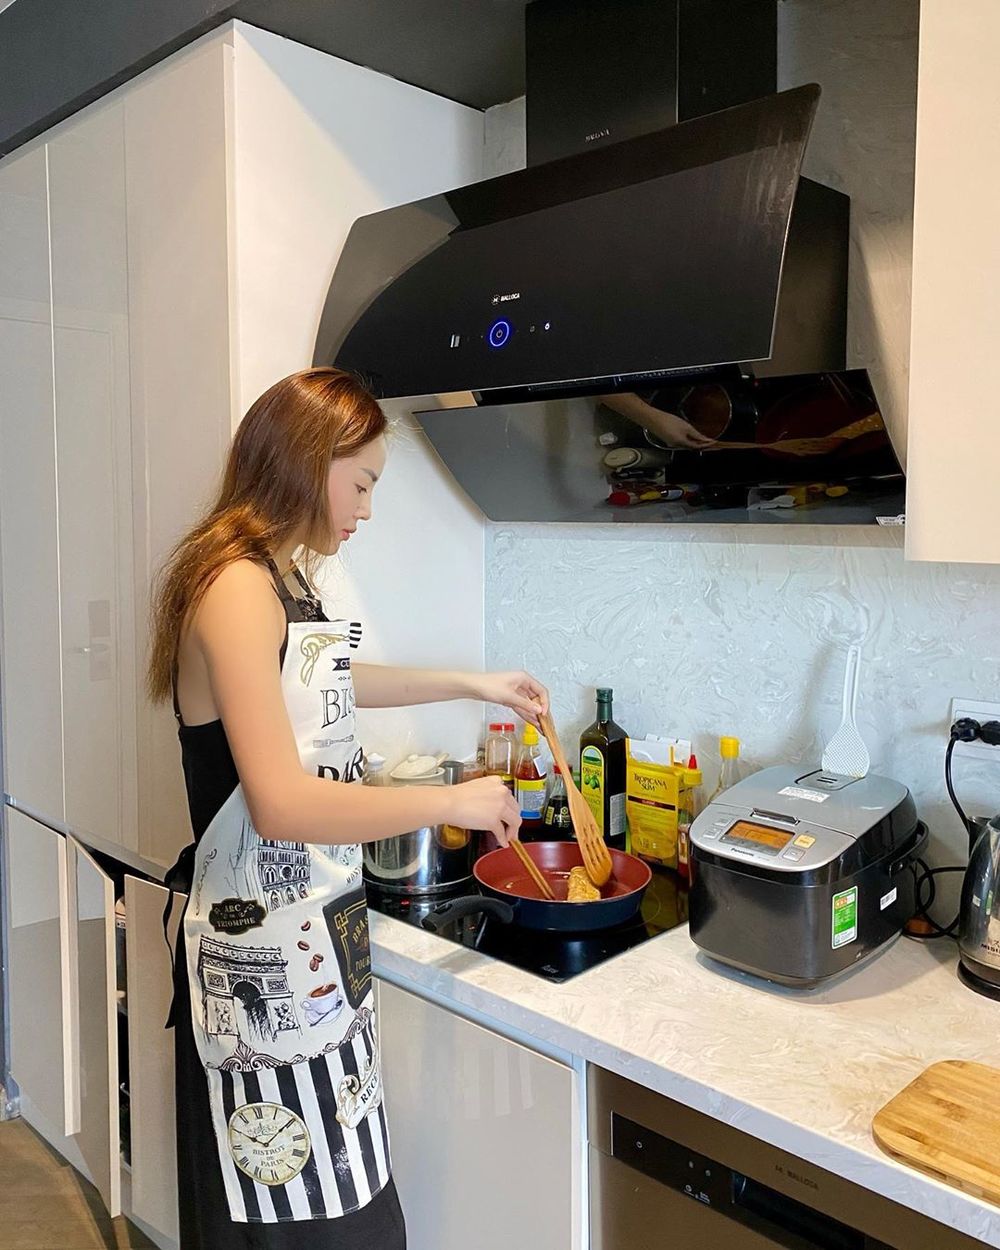  
Và vào bếp để thực hiện những món ăn eat clean, tránh tăng cân trong thời gian nghỉ ở nhà. (Ảnh: Instagram nhân vật)